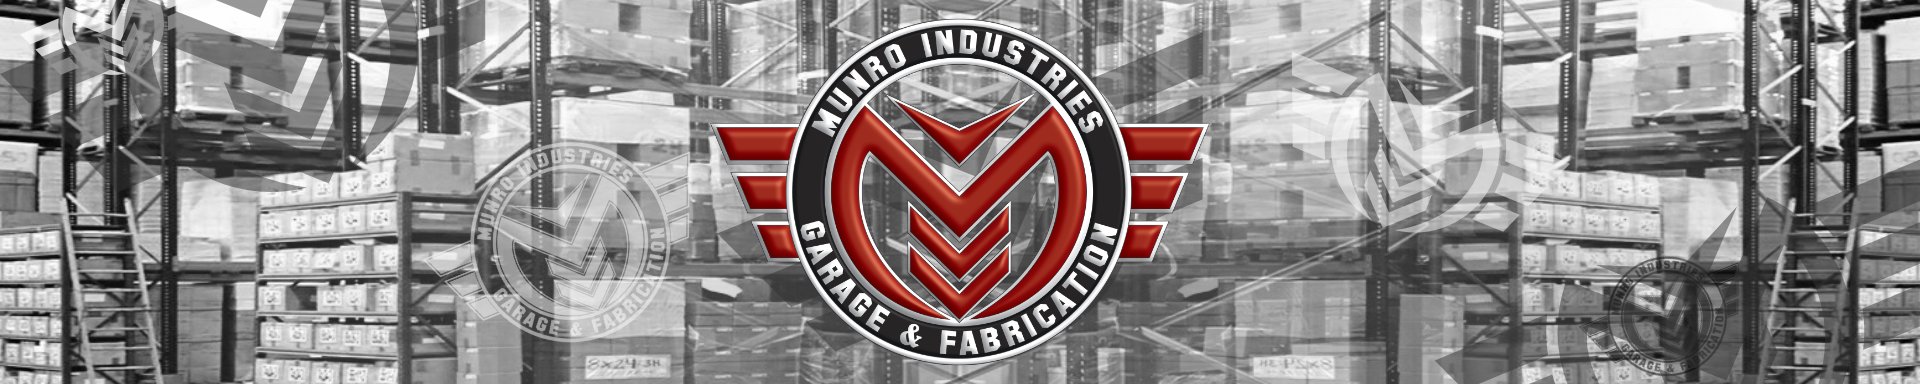 Featured Products | GarageAndFab.com | Munro Industries gf-10010300h